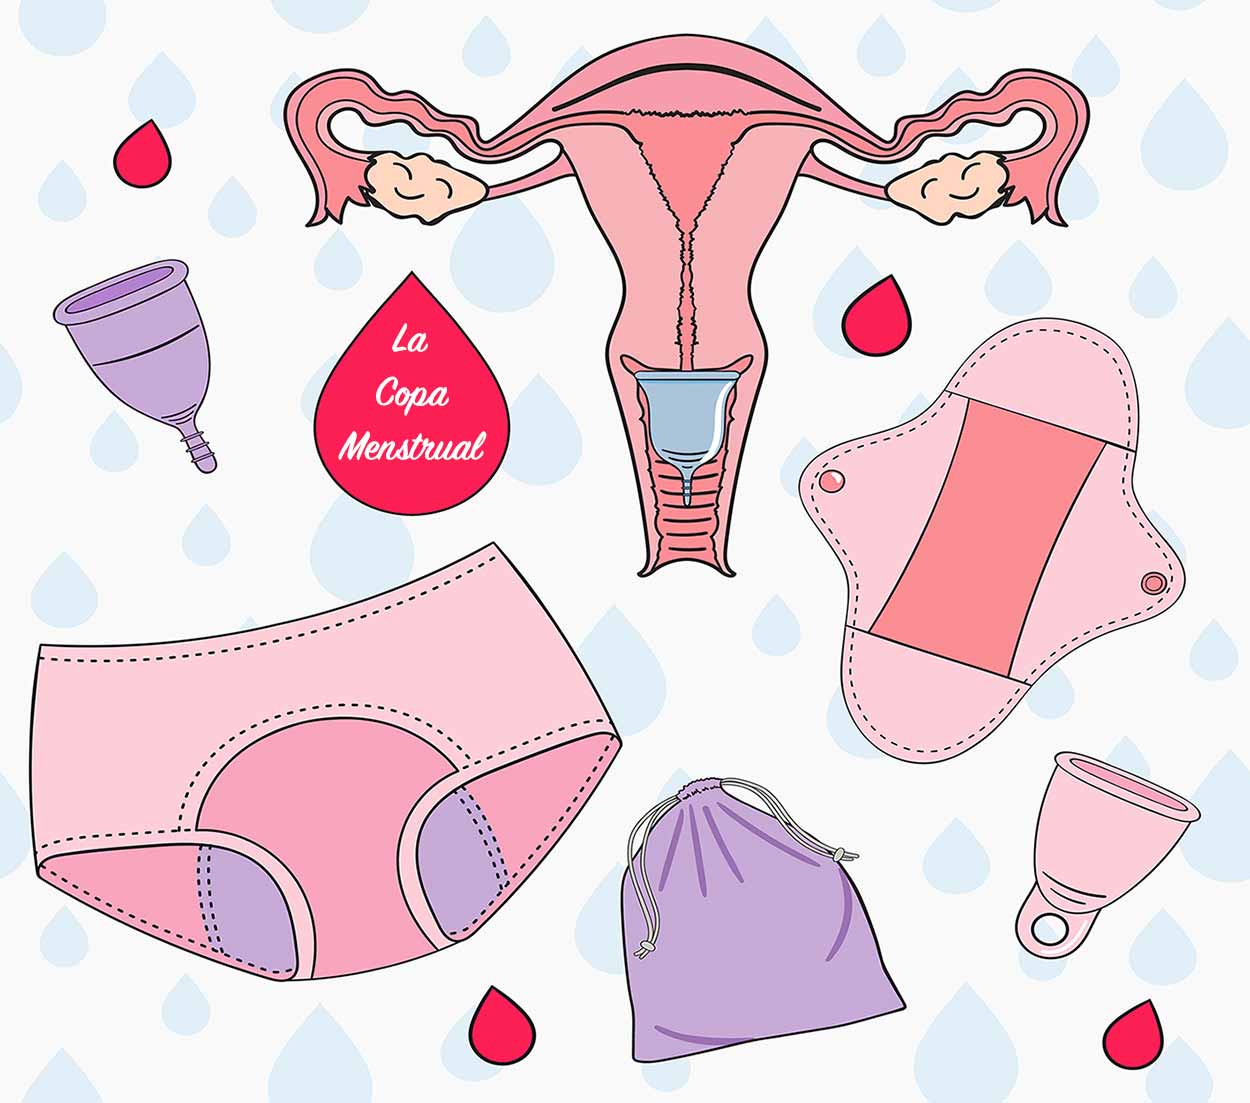 Tener Sexo con la copa menstrual puesta: ¿Se puede?